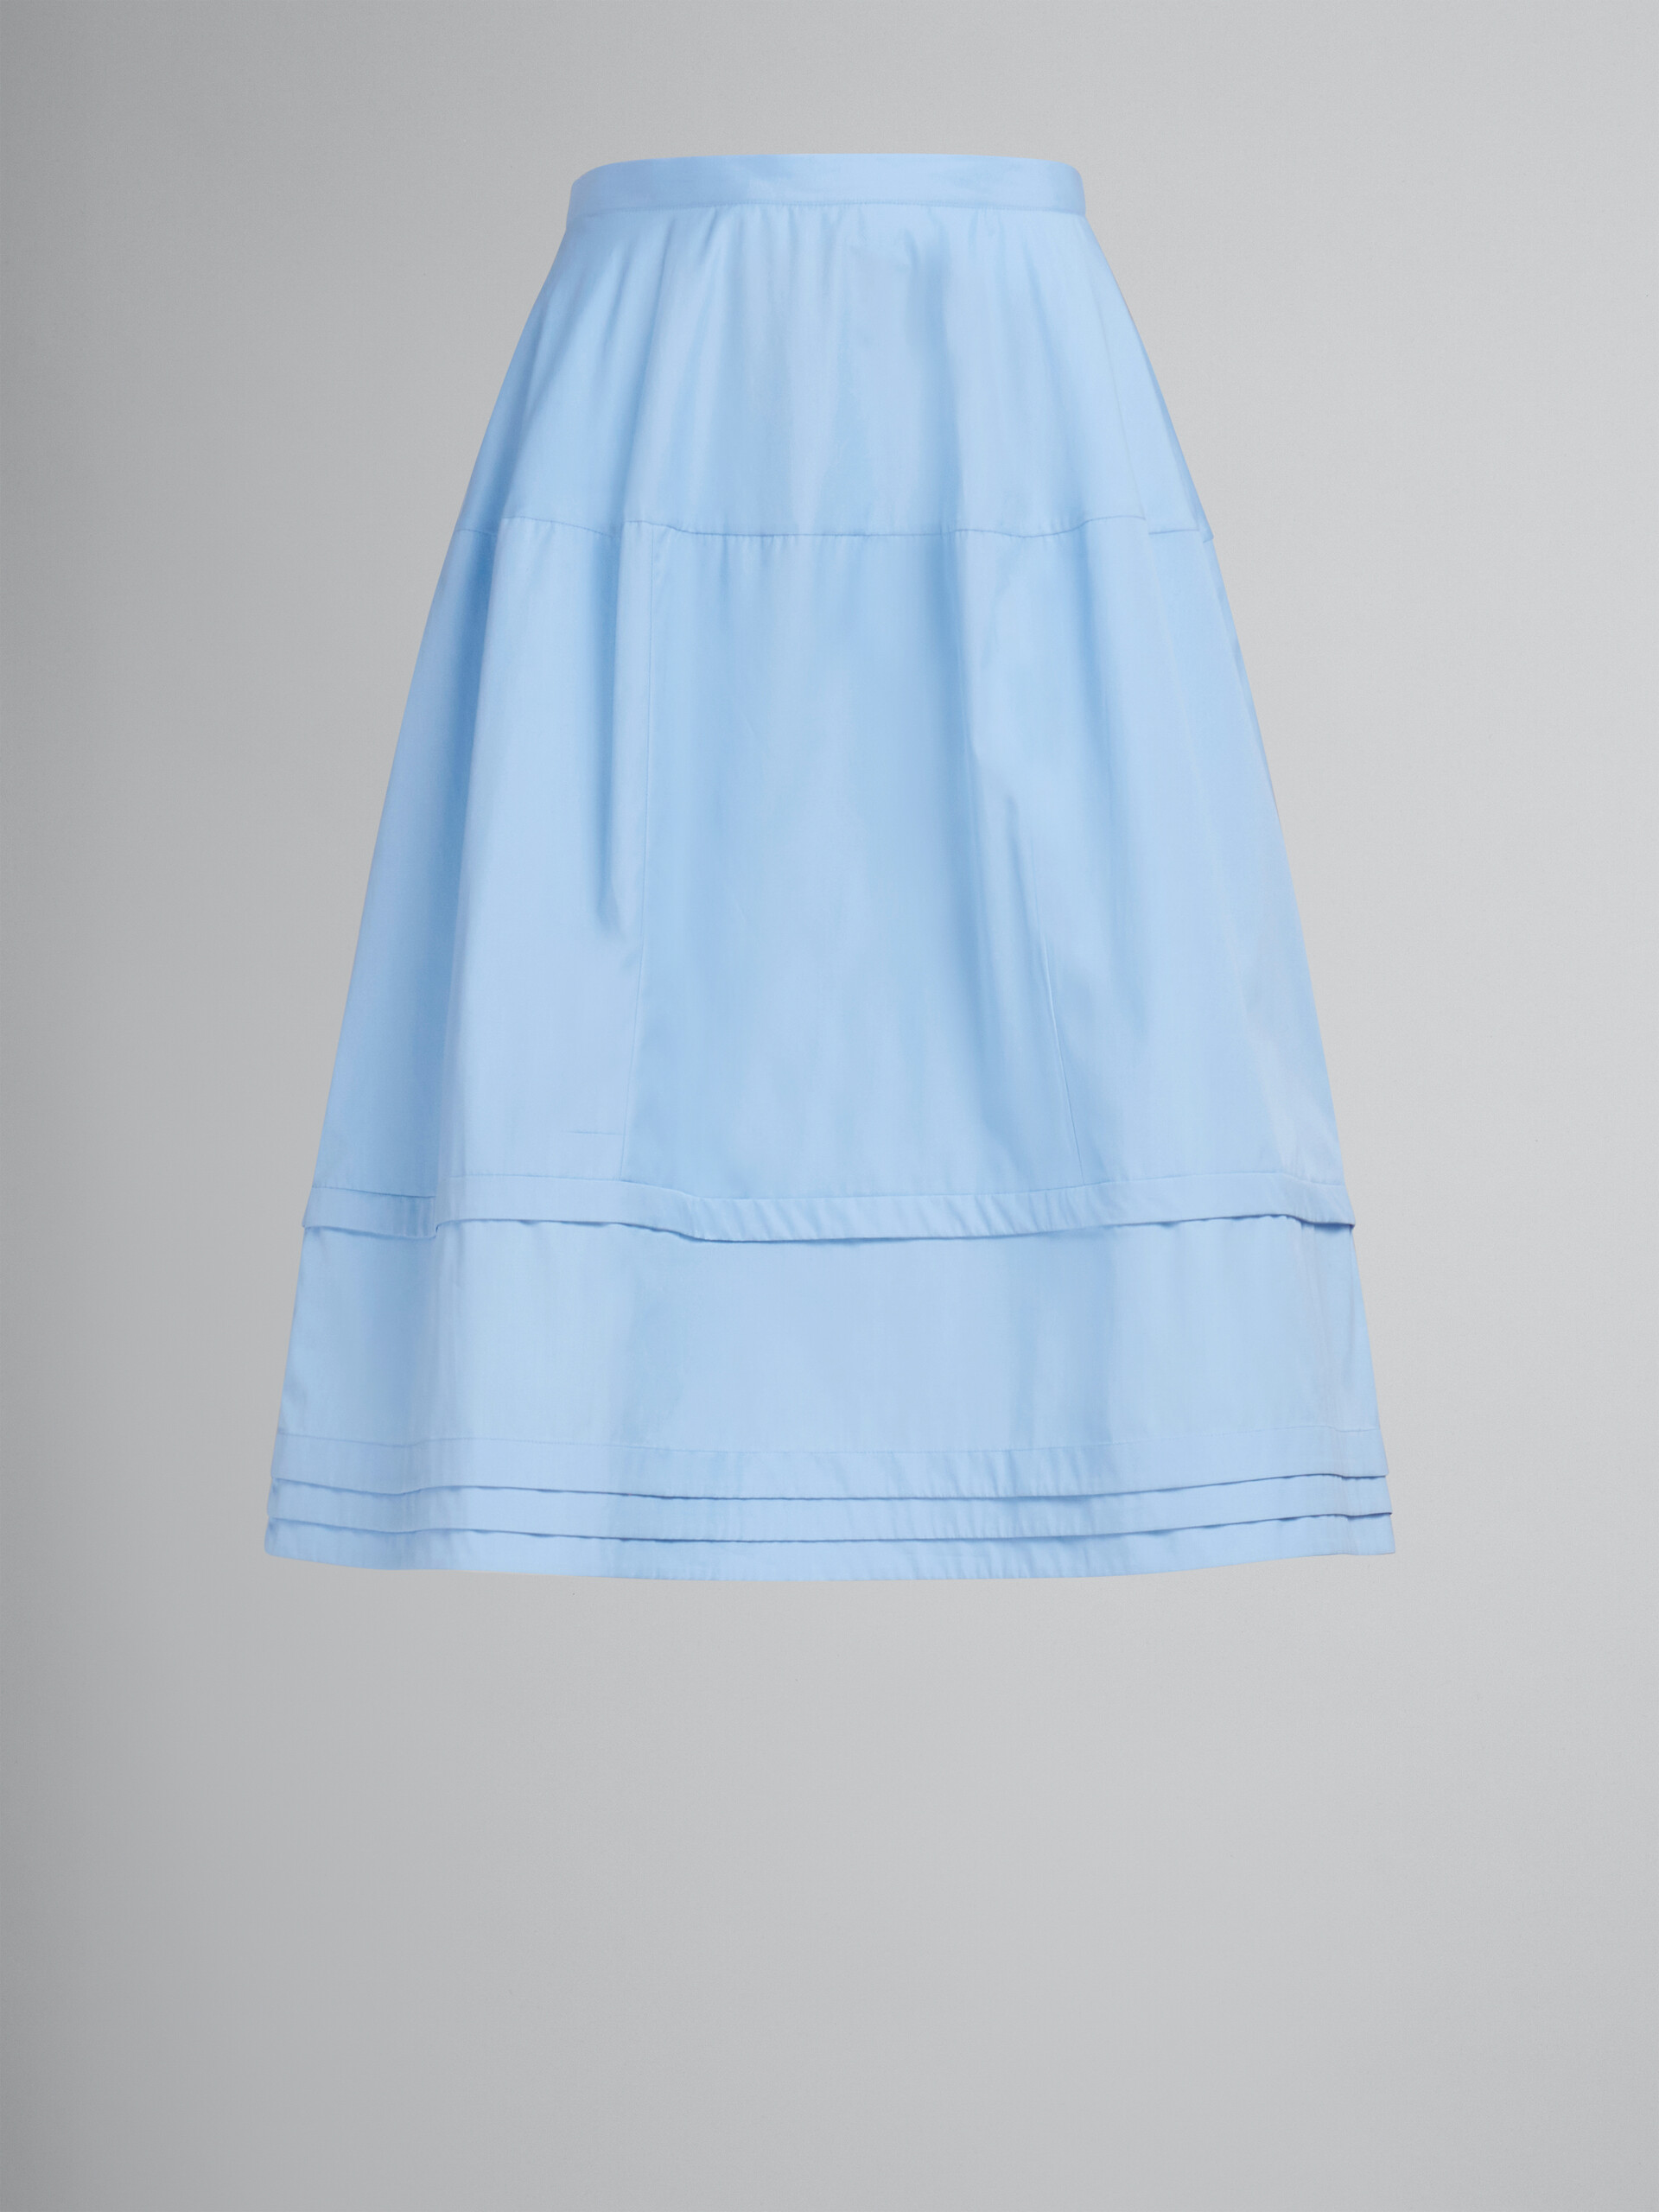 Falda midi acampanada de popelina azul claro - Faldas - Image 1